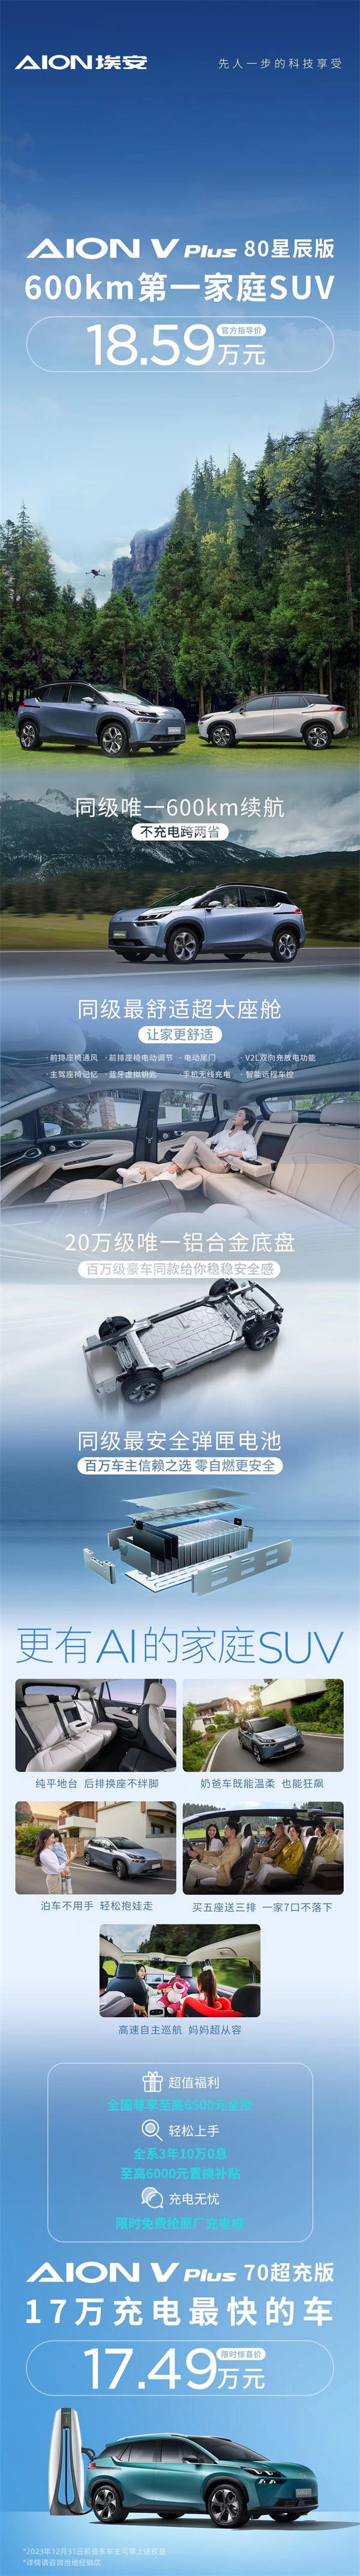 埃安 AION V Plus 新增 80 星辰版车型，指导价 18.59 万元